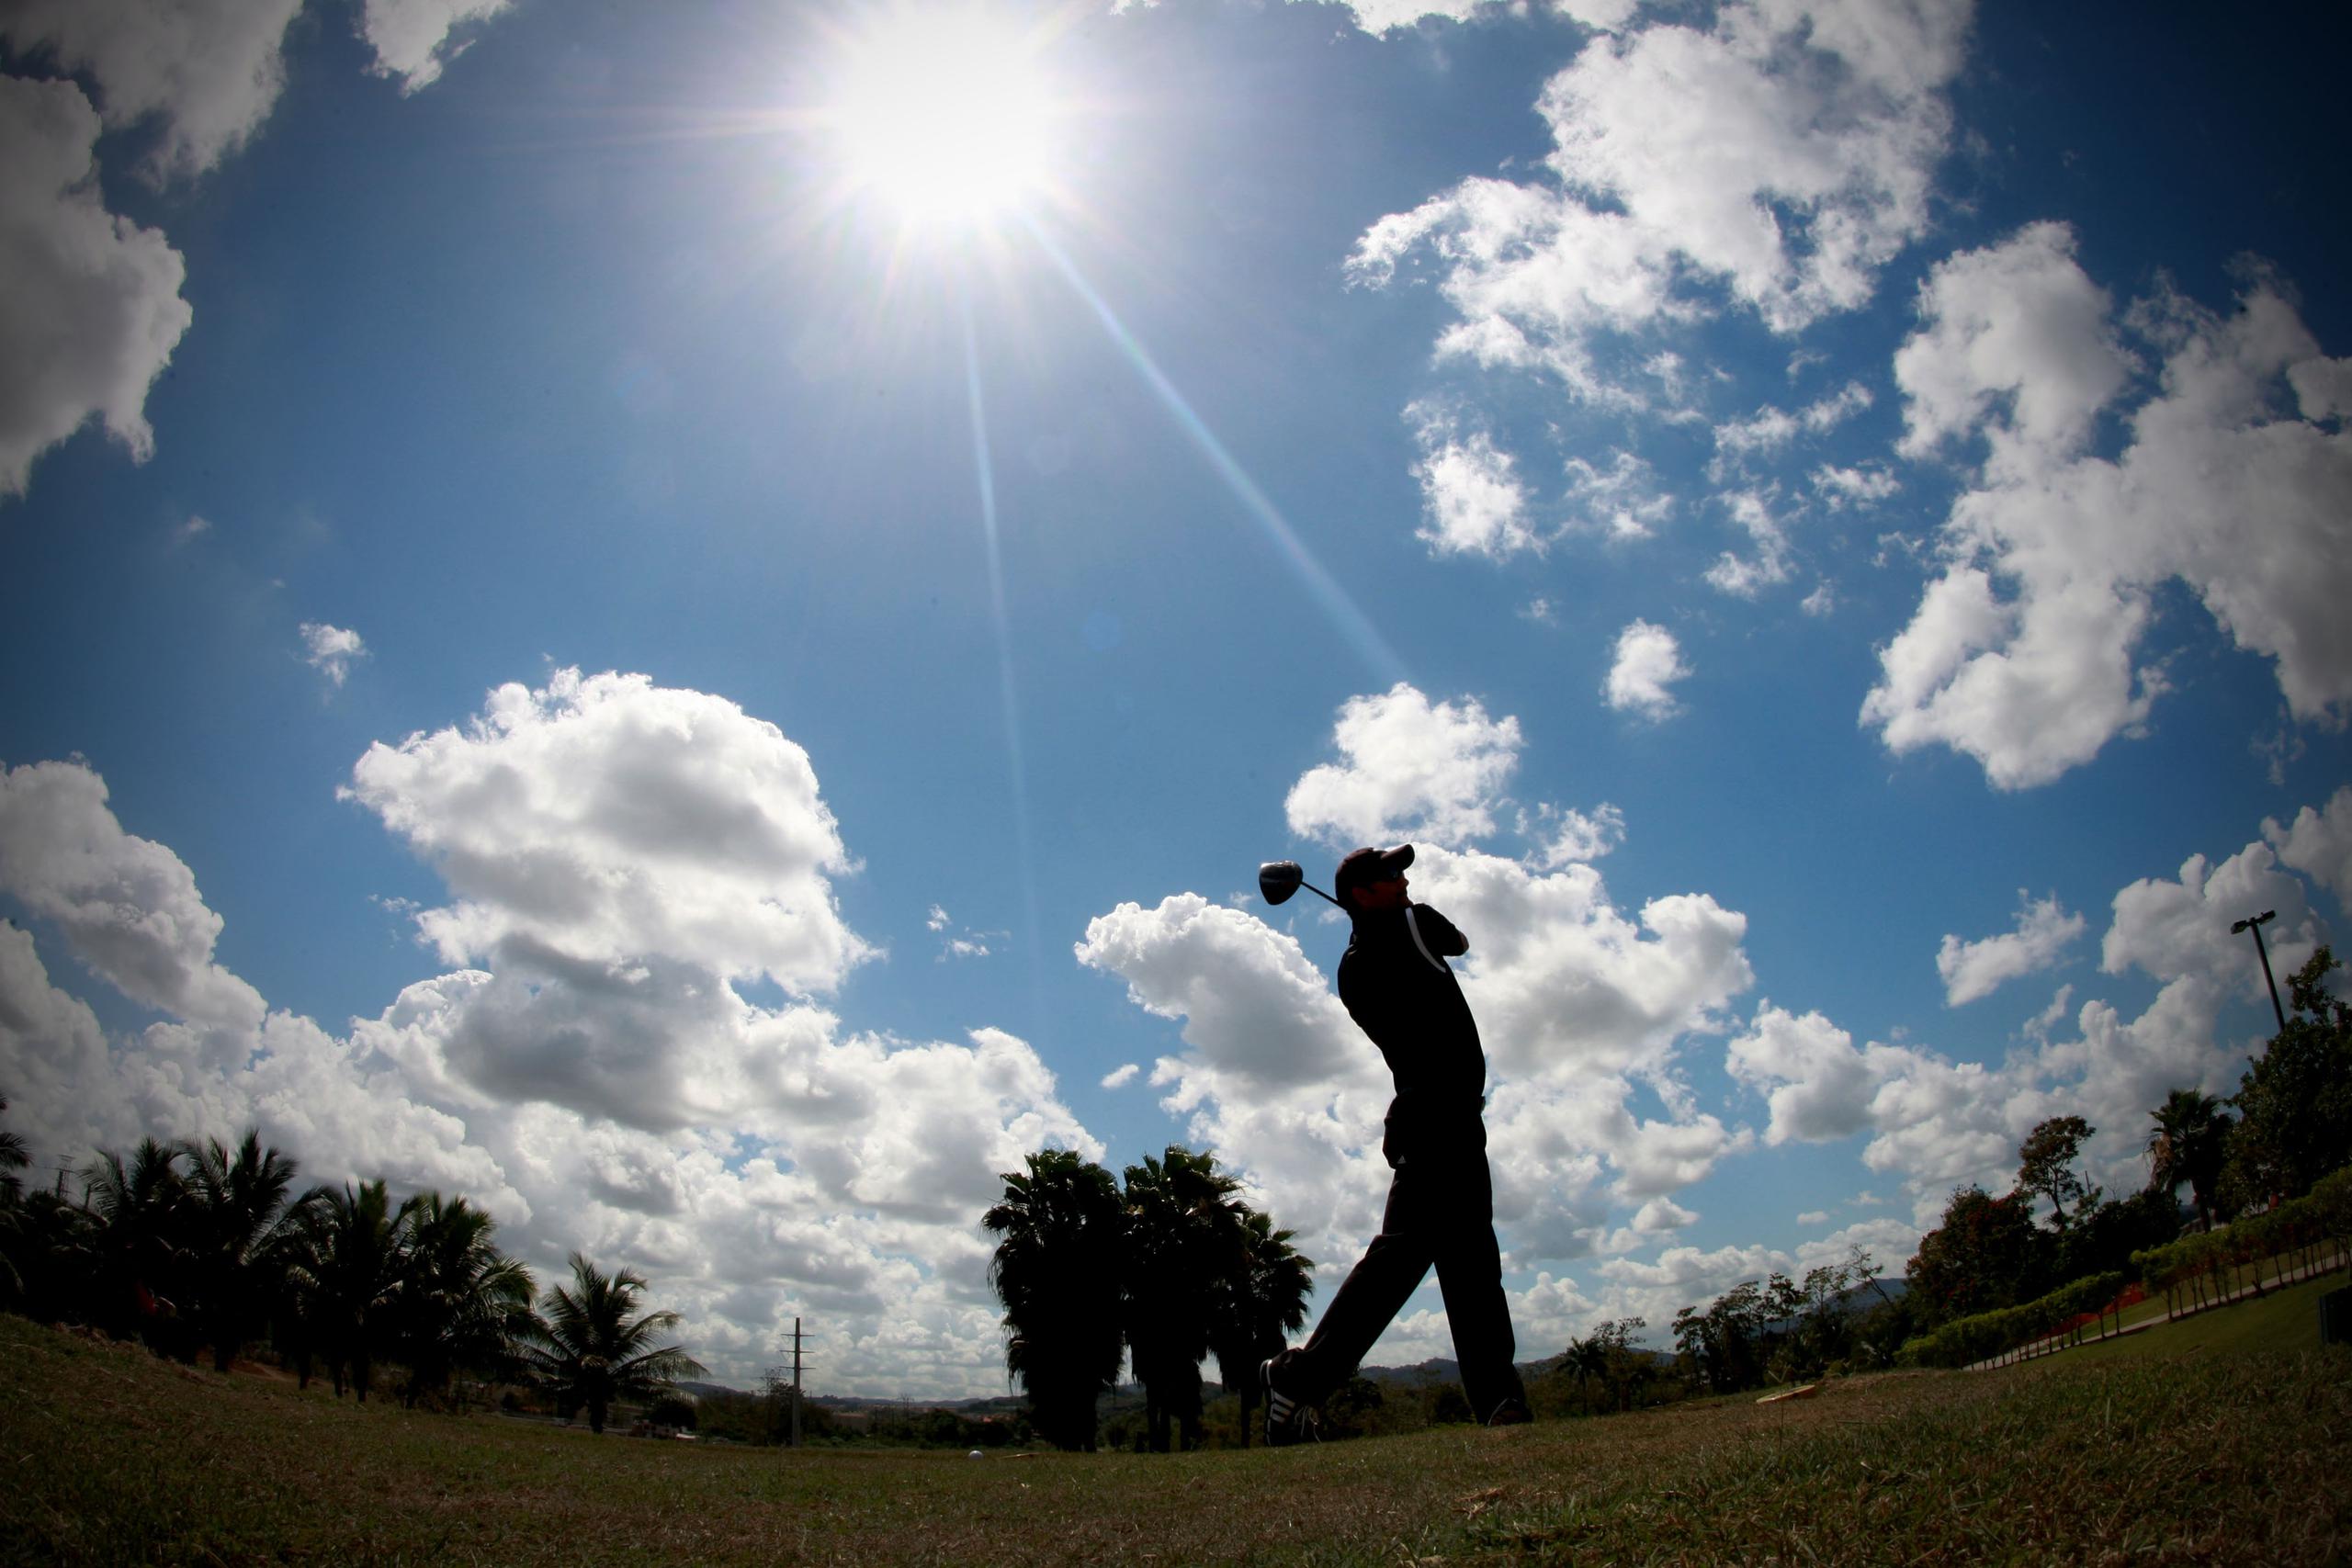 El golf es una de las disciplinas que se podrán llevar a cabo bajo unas estrictas medidas de seguridad.